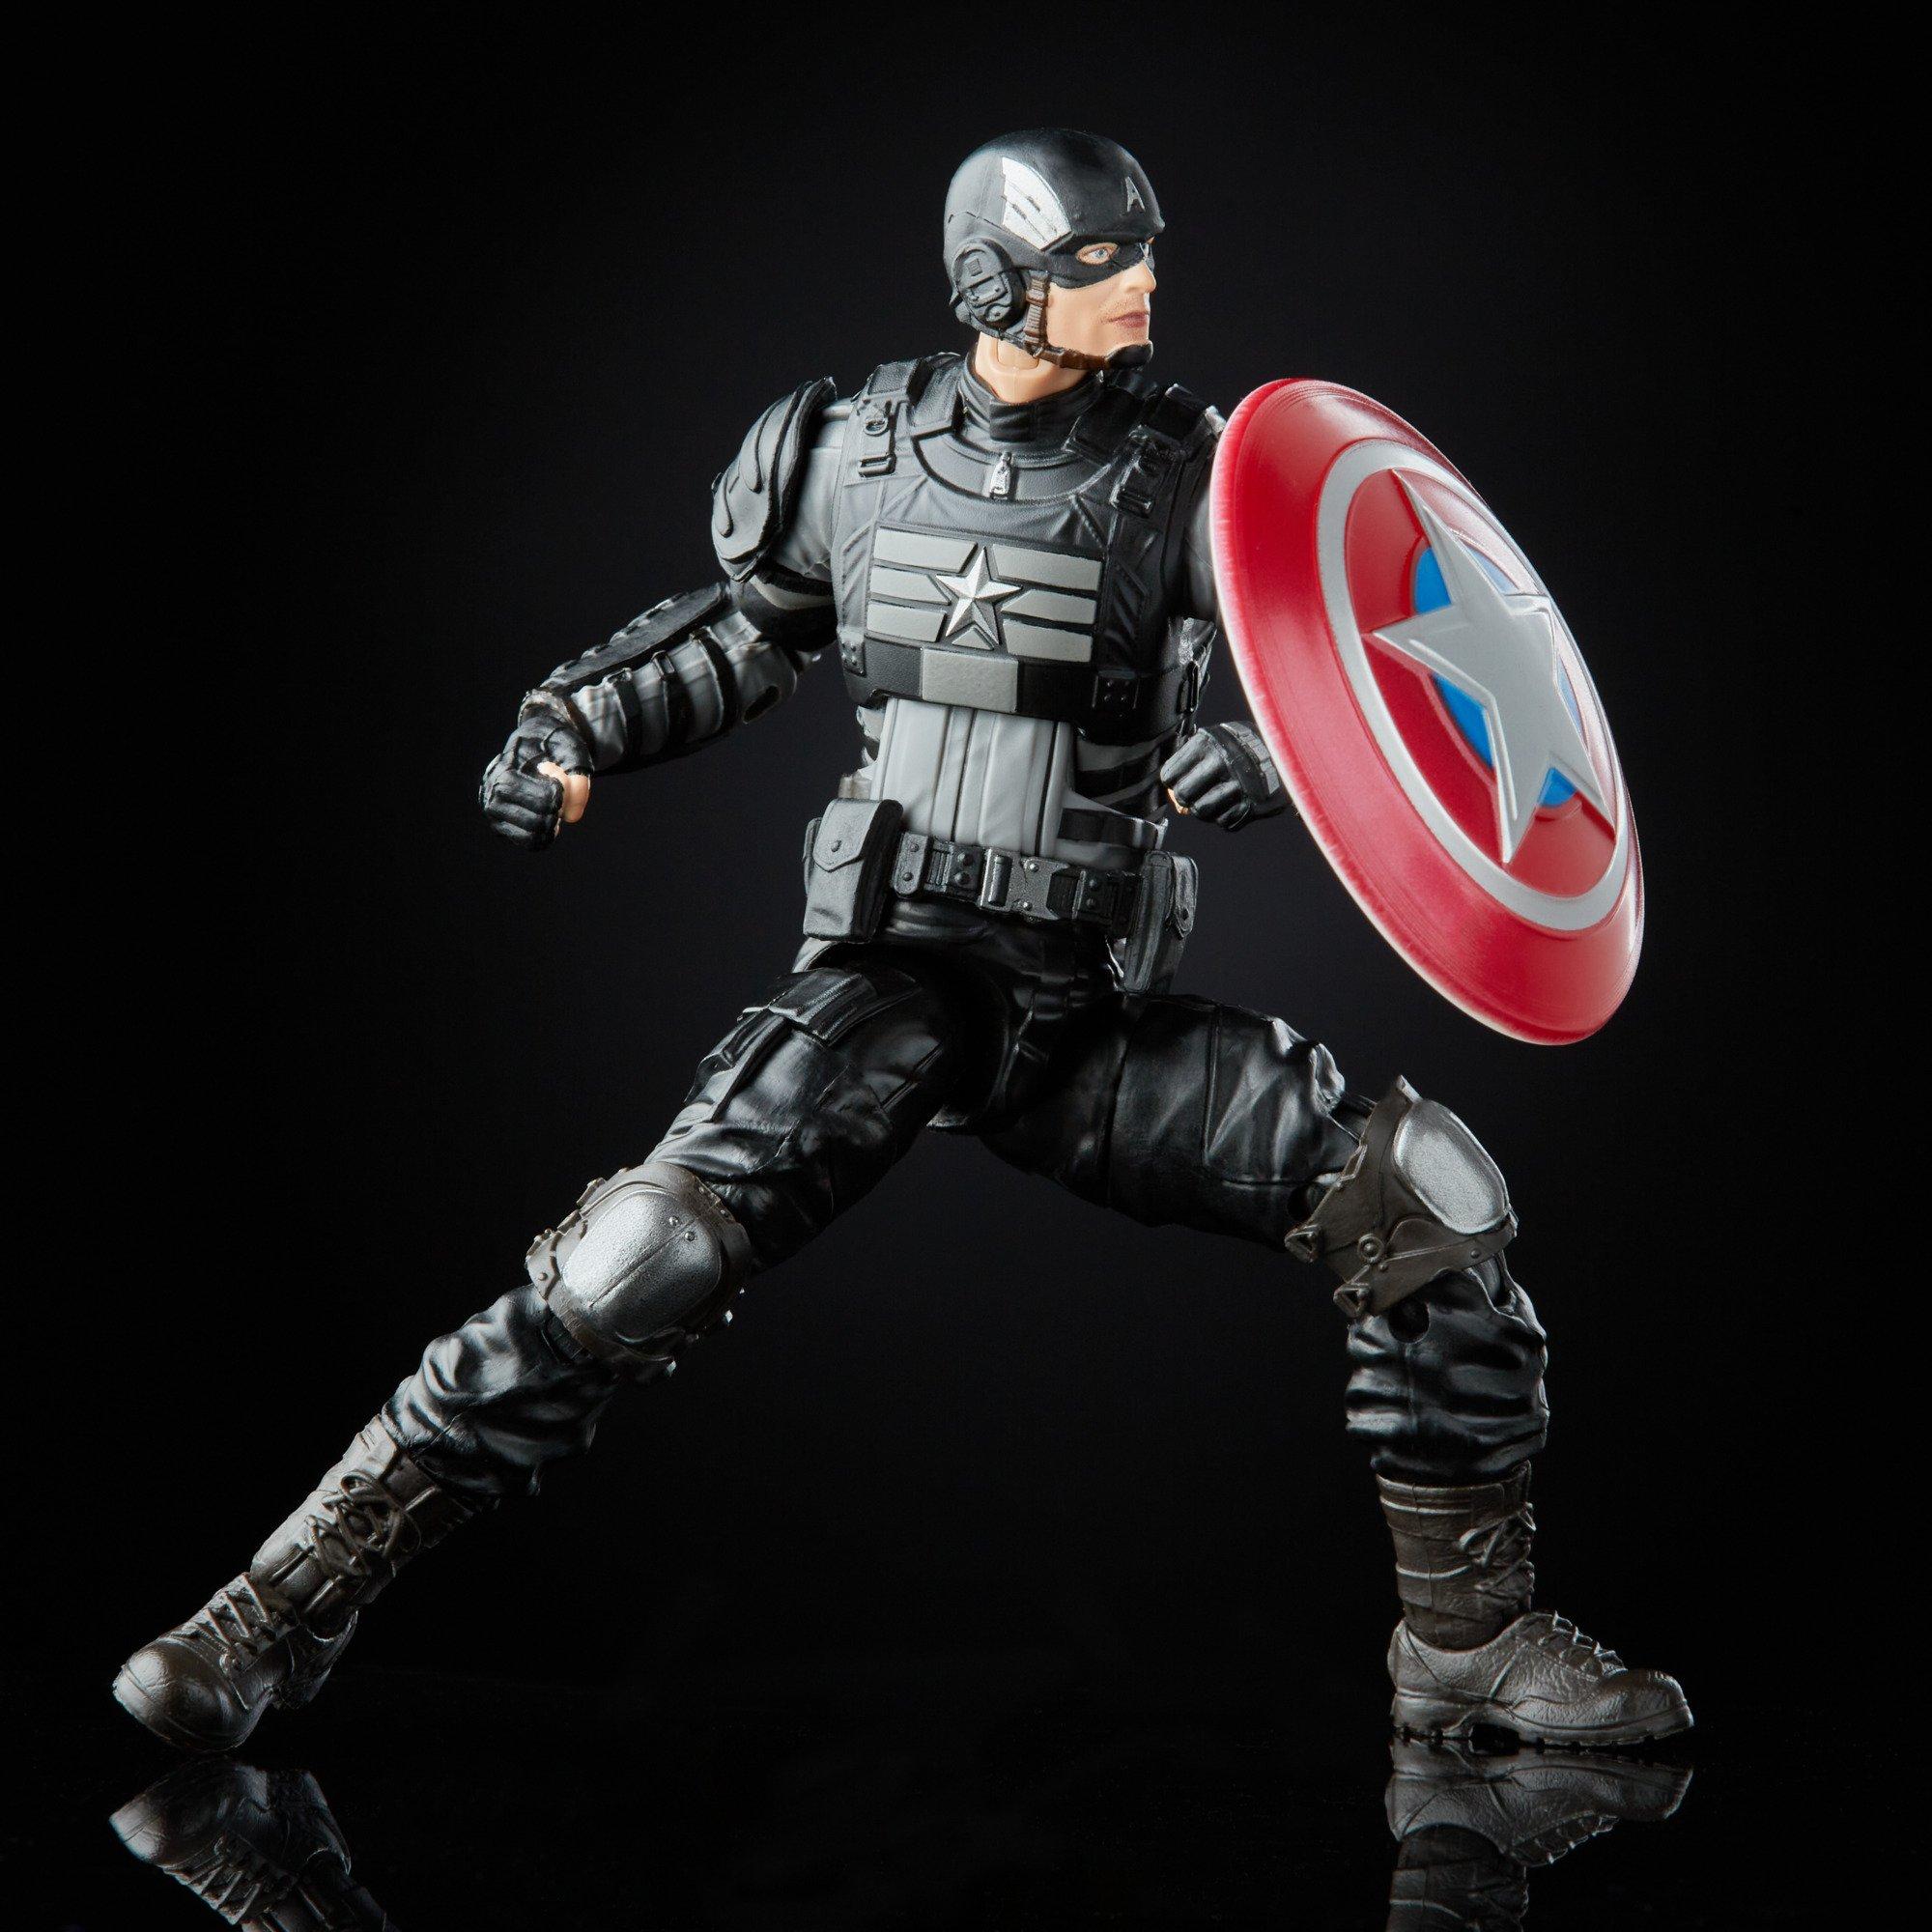 Hasbro Marvel Legends Series Marvel's Avengers Stealth Captain America Gamerverse 6-in Action Figure